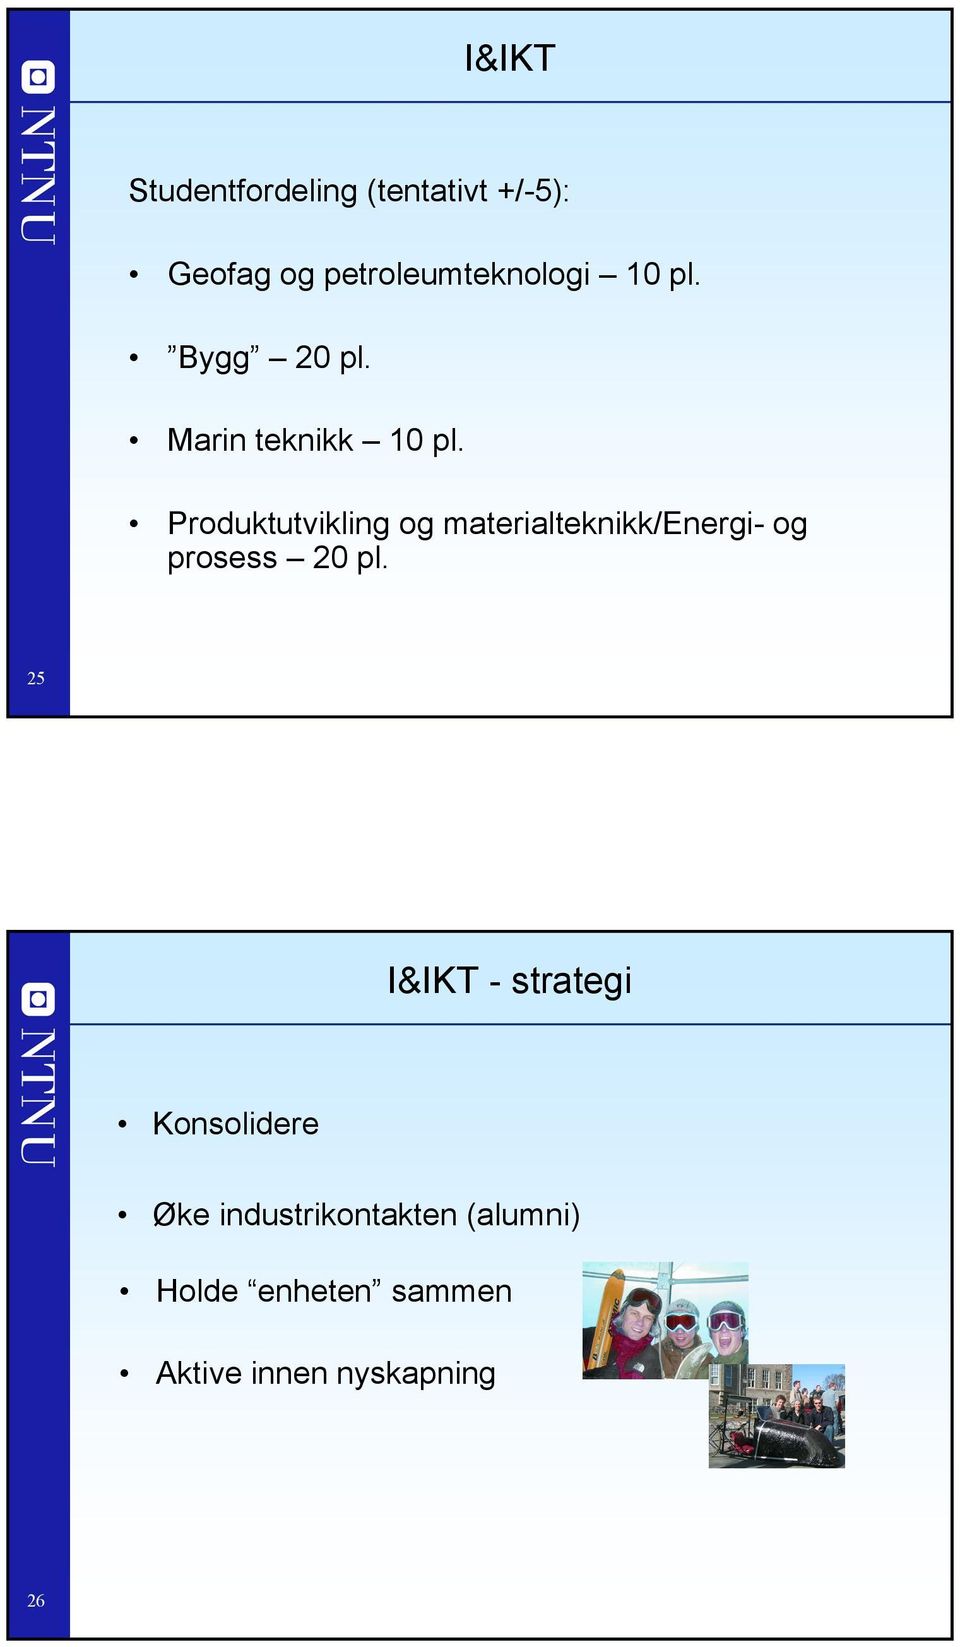 Produktutvikling og materialteknikk/energi- og prosess 20 pl.